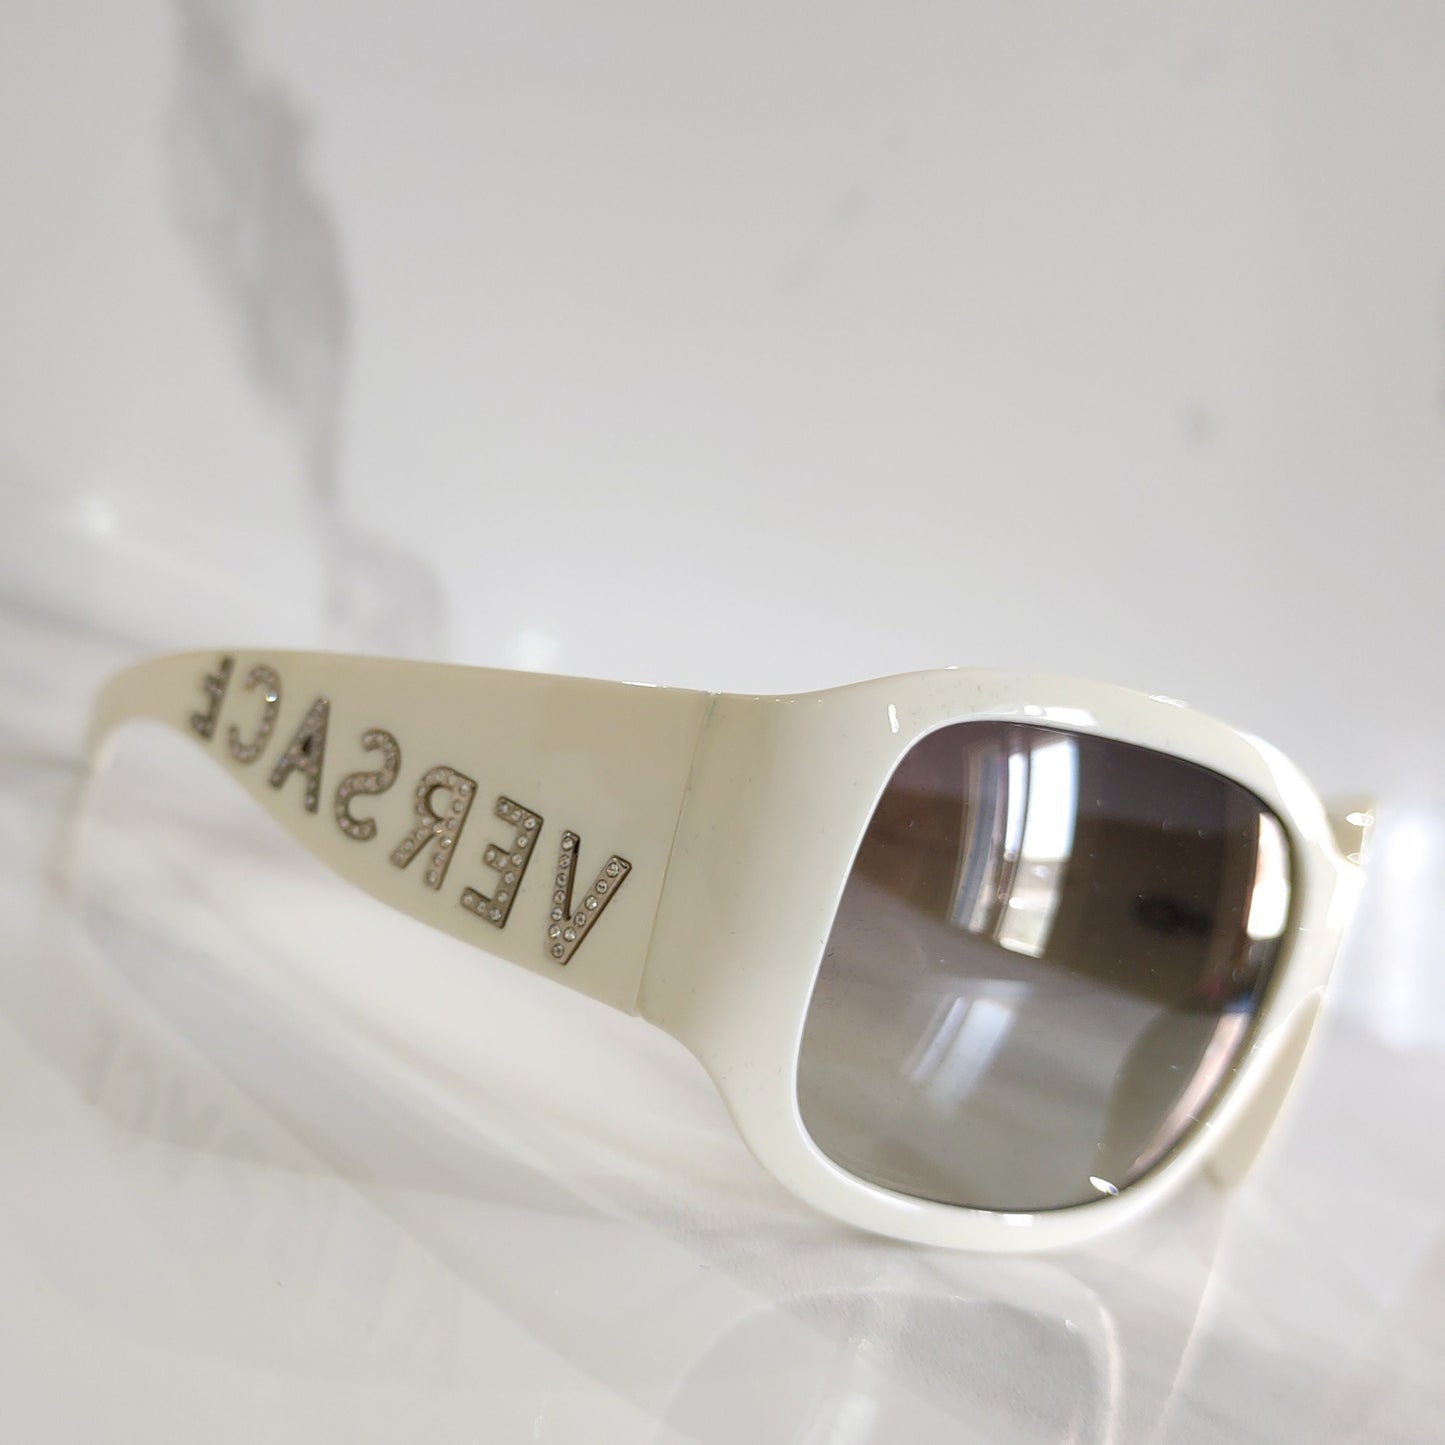 Versace 4131 occhiali da sole vintage occhiali gafas 90s Y2k